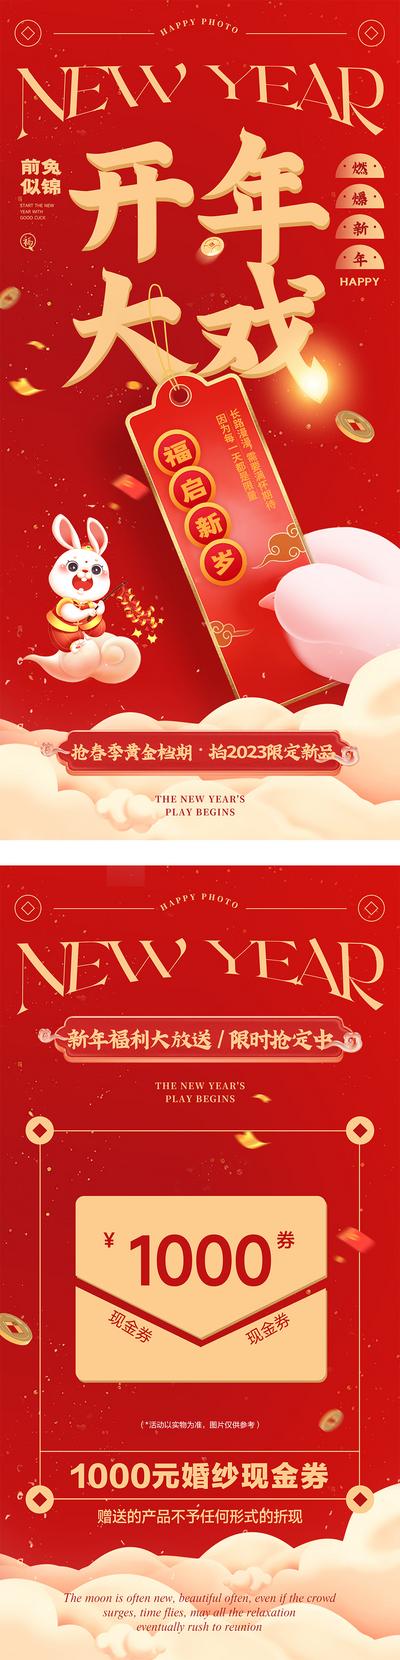 南门网 海报 公历节日 新年 开年大戏 喜庆 红金